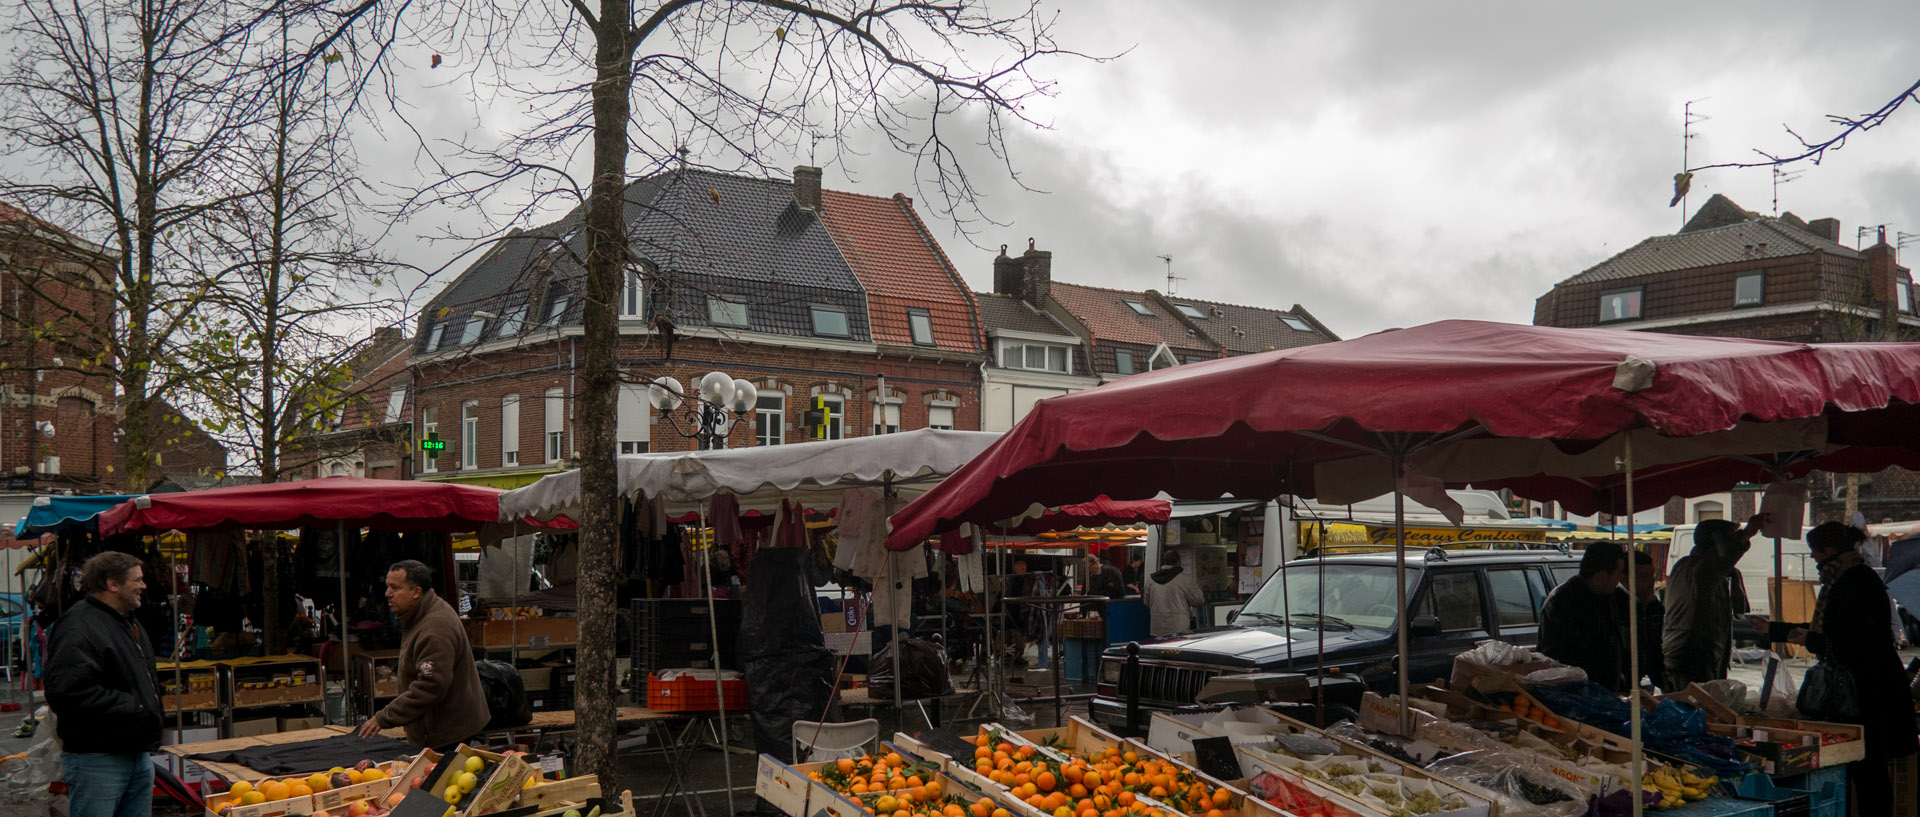 Le marché Saint-Pierre sous la pluie, place de la Liberté, à Croix.